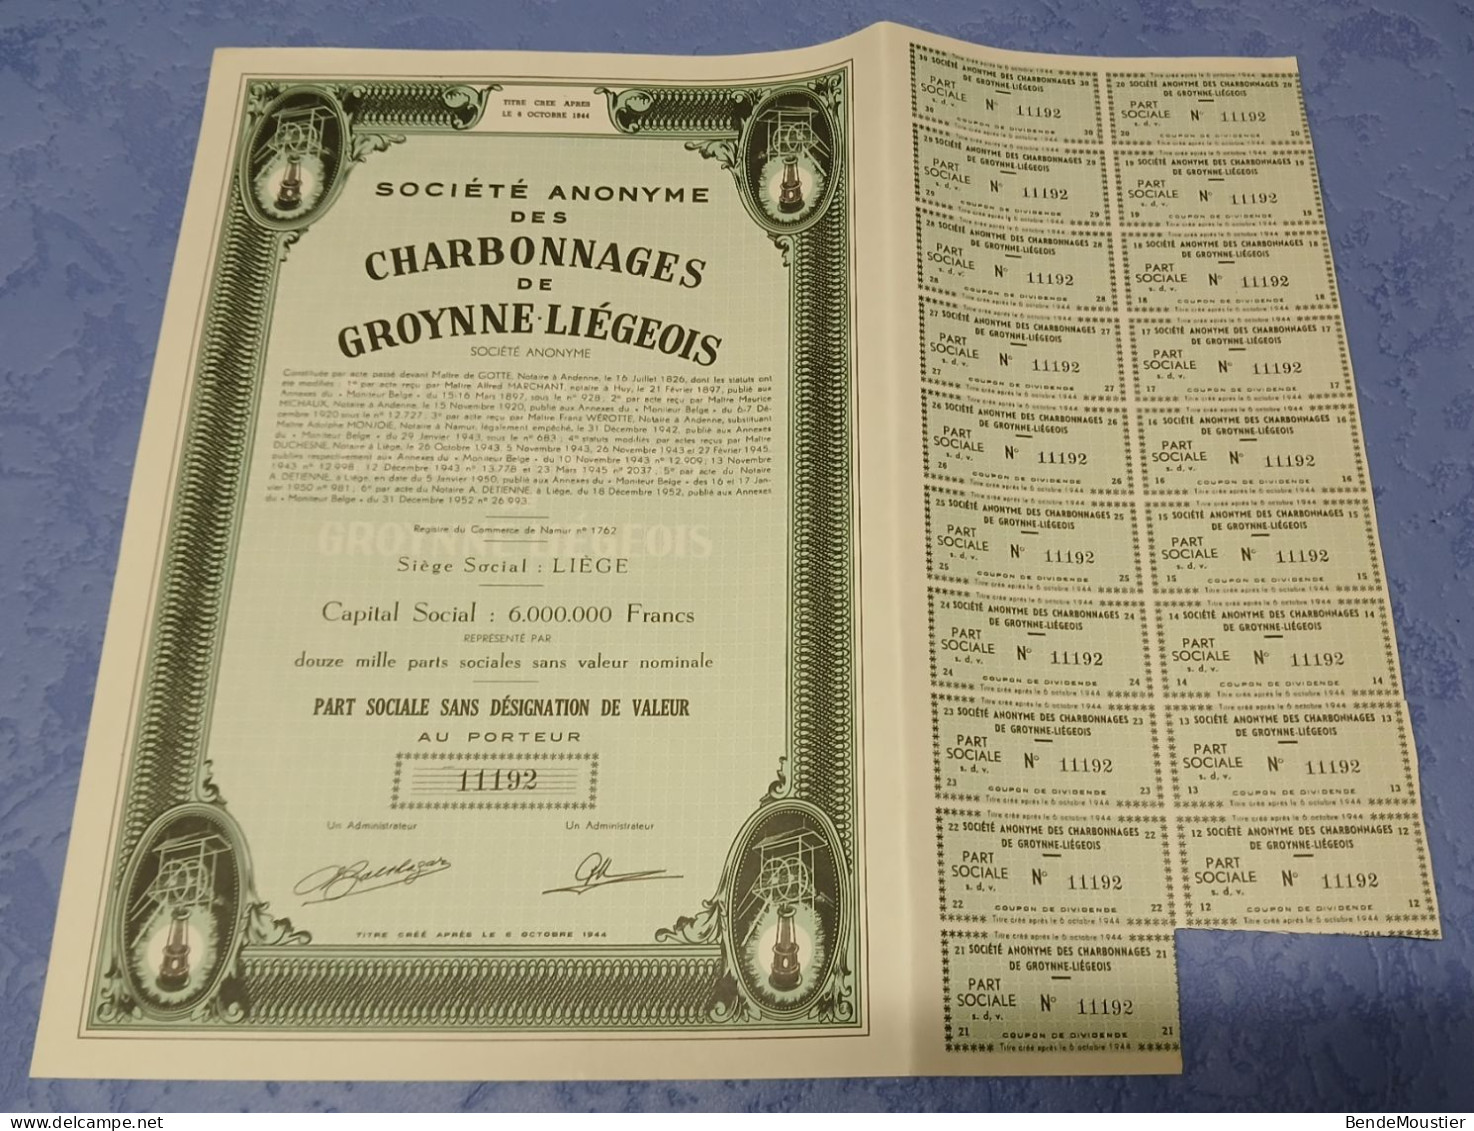 S.A. Des Charbonnages De Groynne Liégeois - Part Sociale Sans Désignation De Valeur Au Porteur - Liège 1952. - Mineral